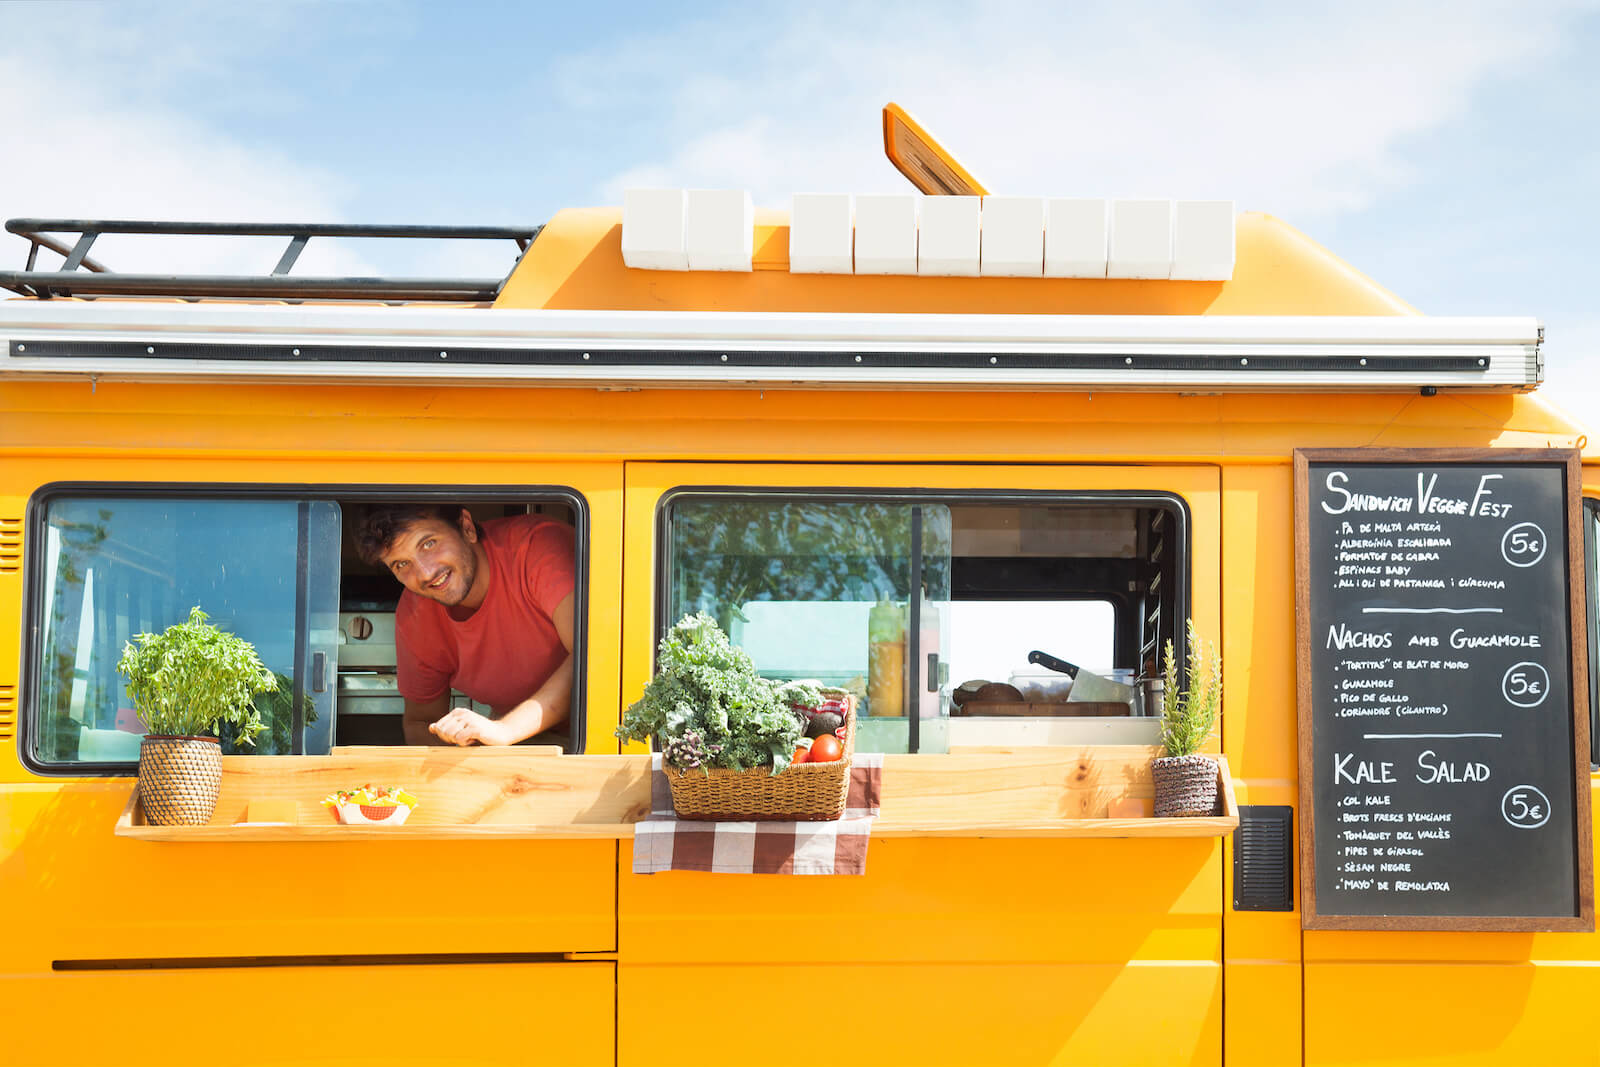 Feel-good vegan-friendly food vans